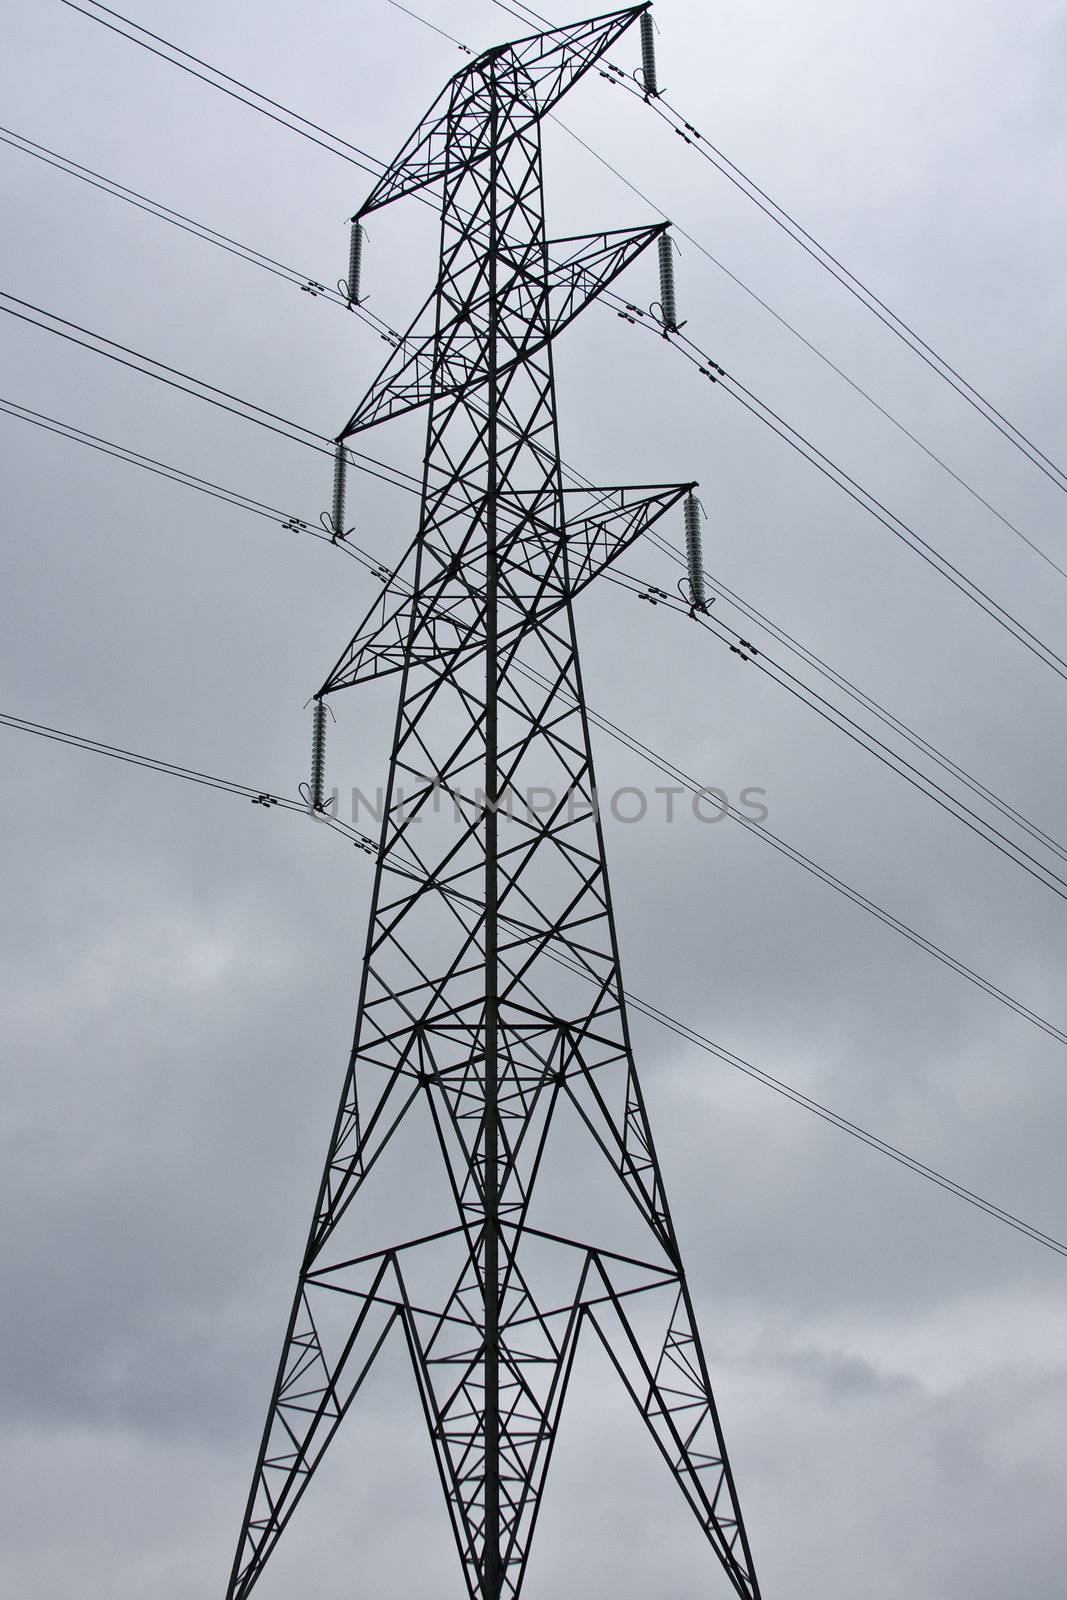 An electricity pylon against a dark cloudy sky